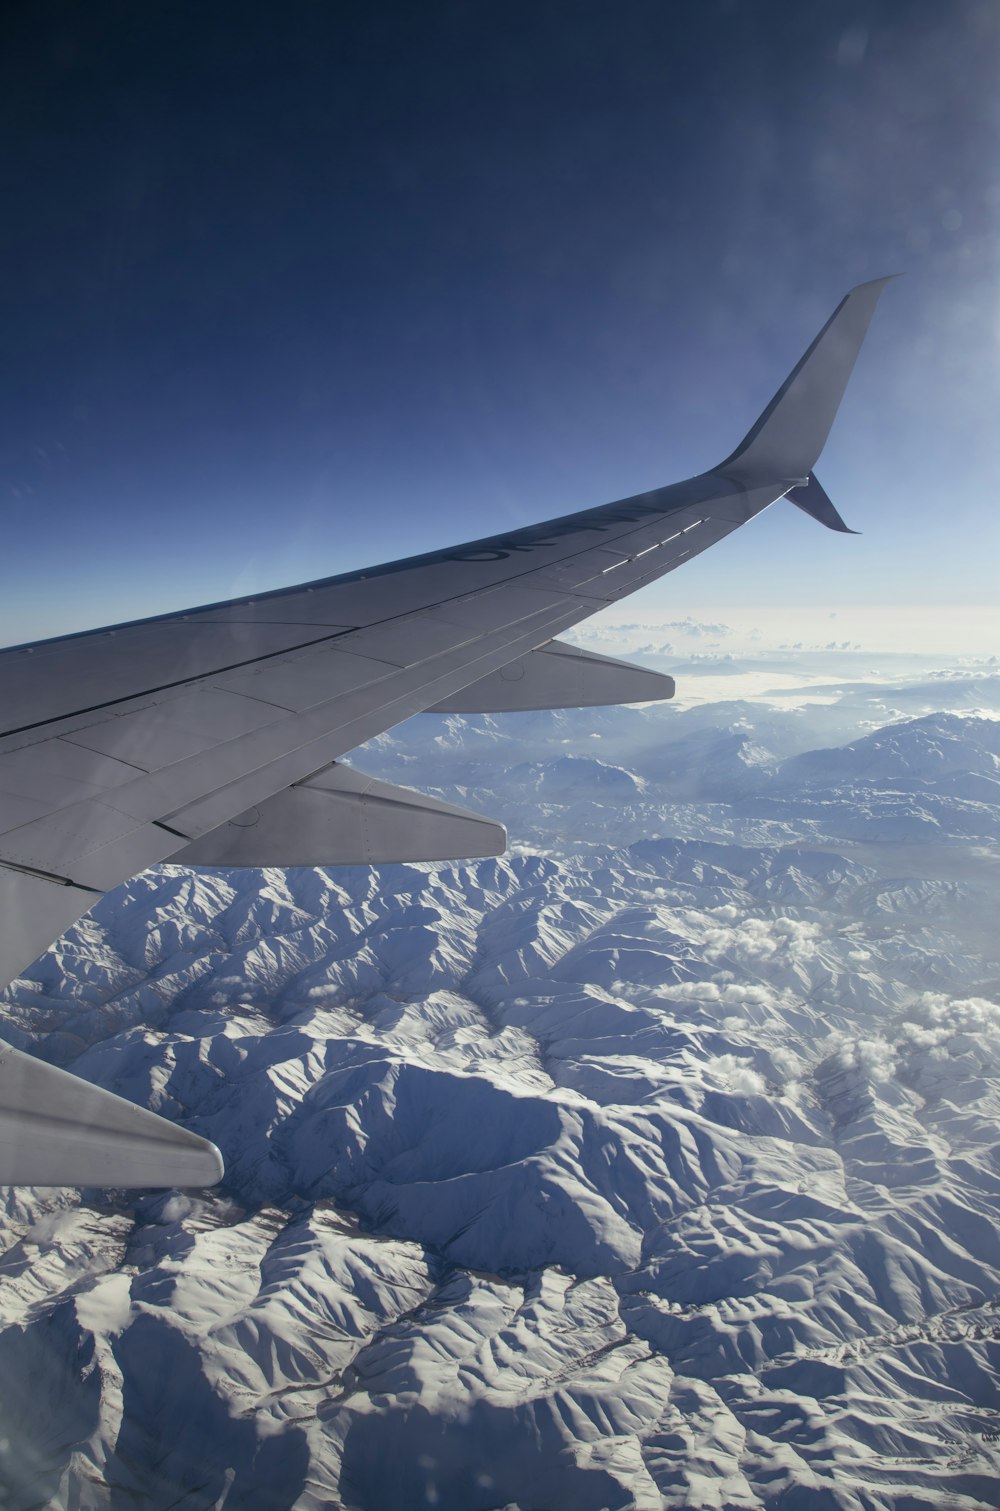 Aile d’avion blanche et noire au-dessus des montagnes blanches et bleues pendant la journée